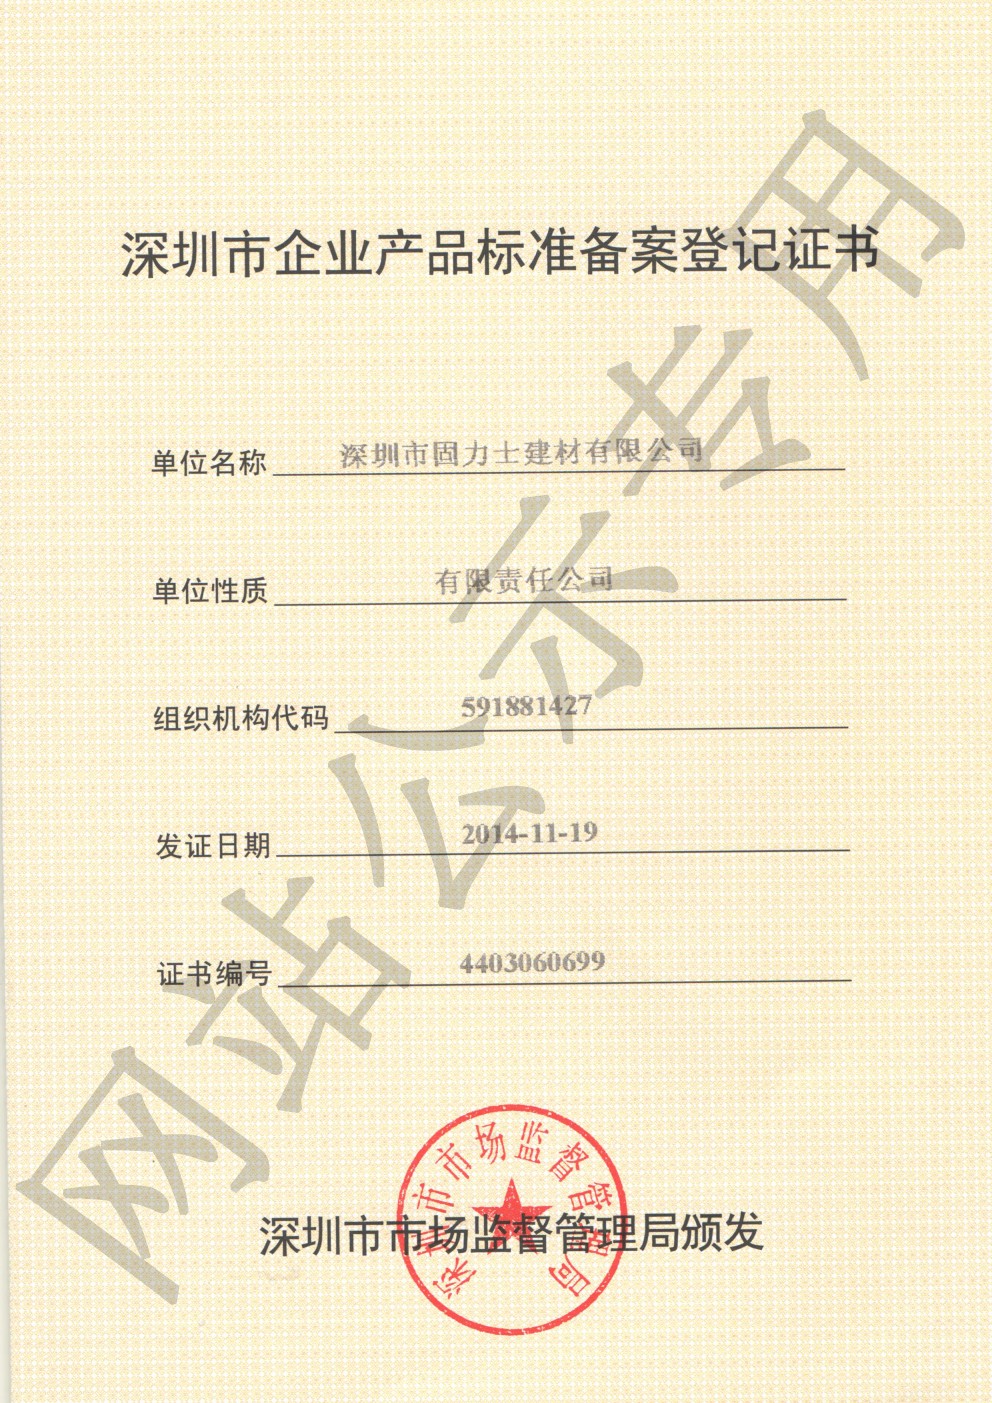 昭化企业产品标准登记证书